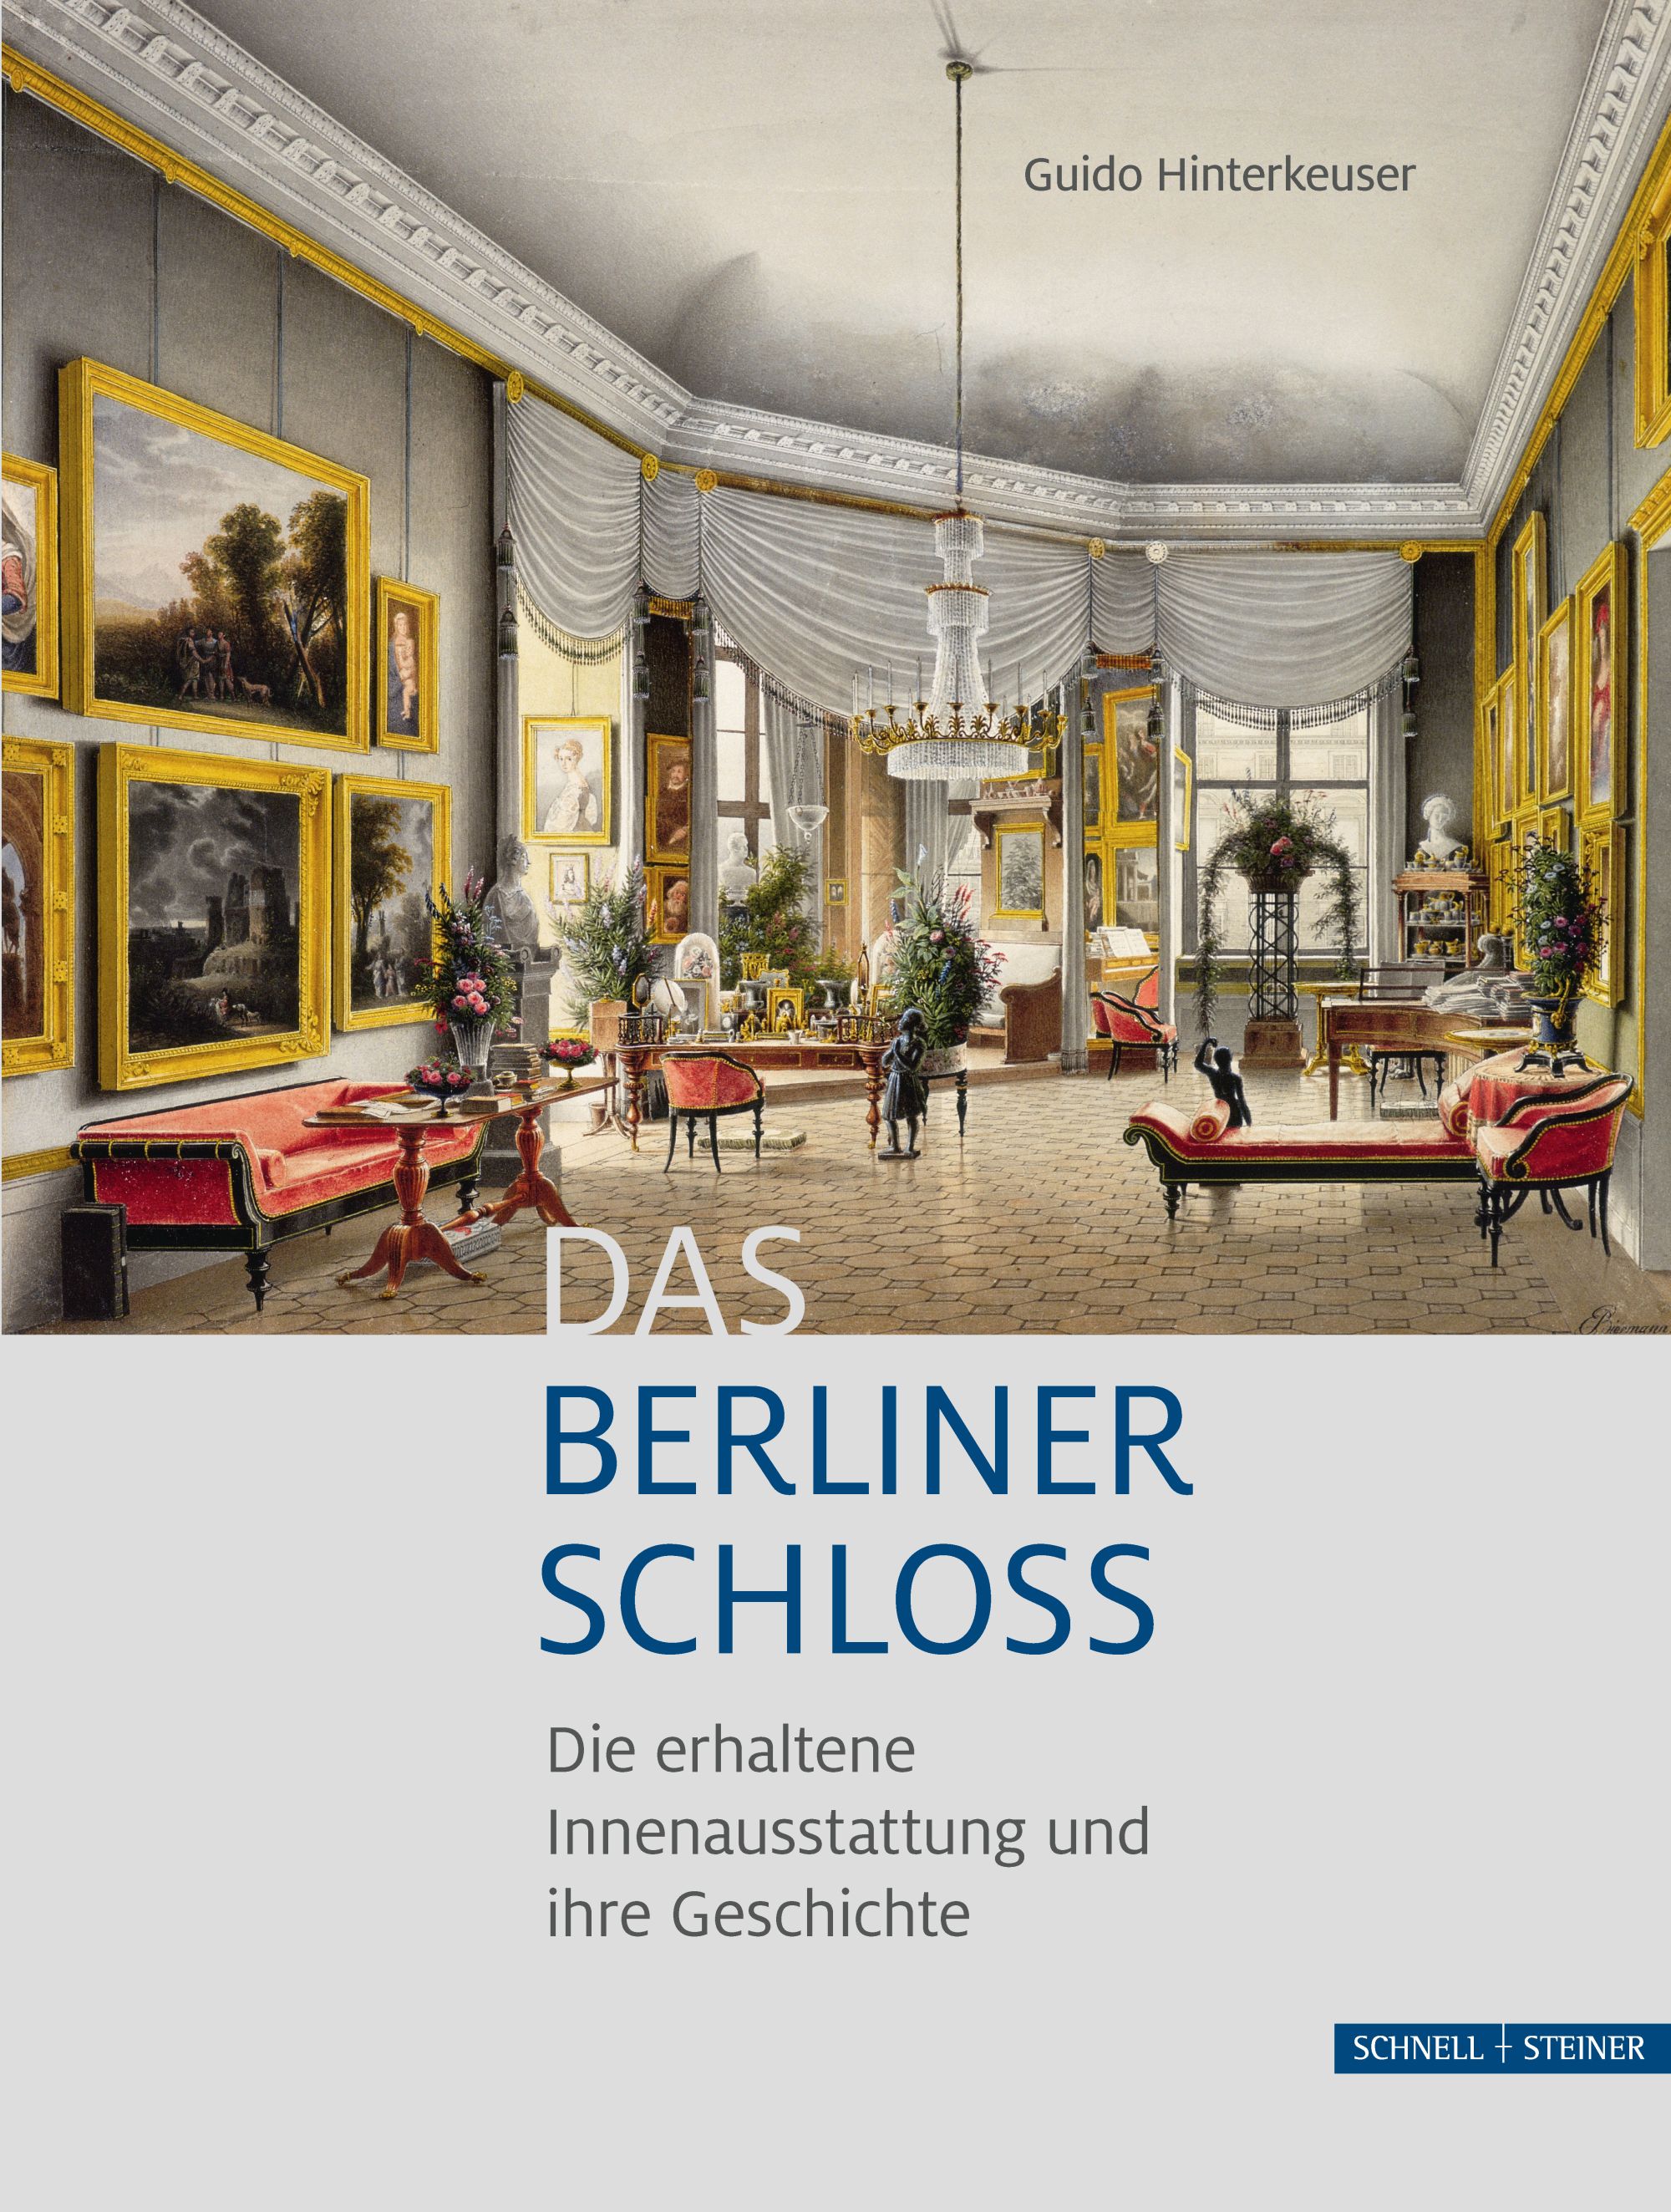 Das Berliner Schloss - Die erhaltene Innenausstattung und ihre Geschichte -  Guido Hinterkeuser - Verlag Schnell & Steiner